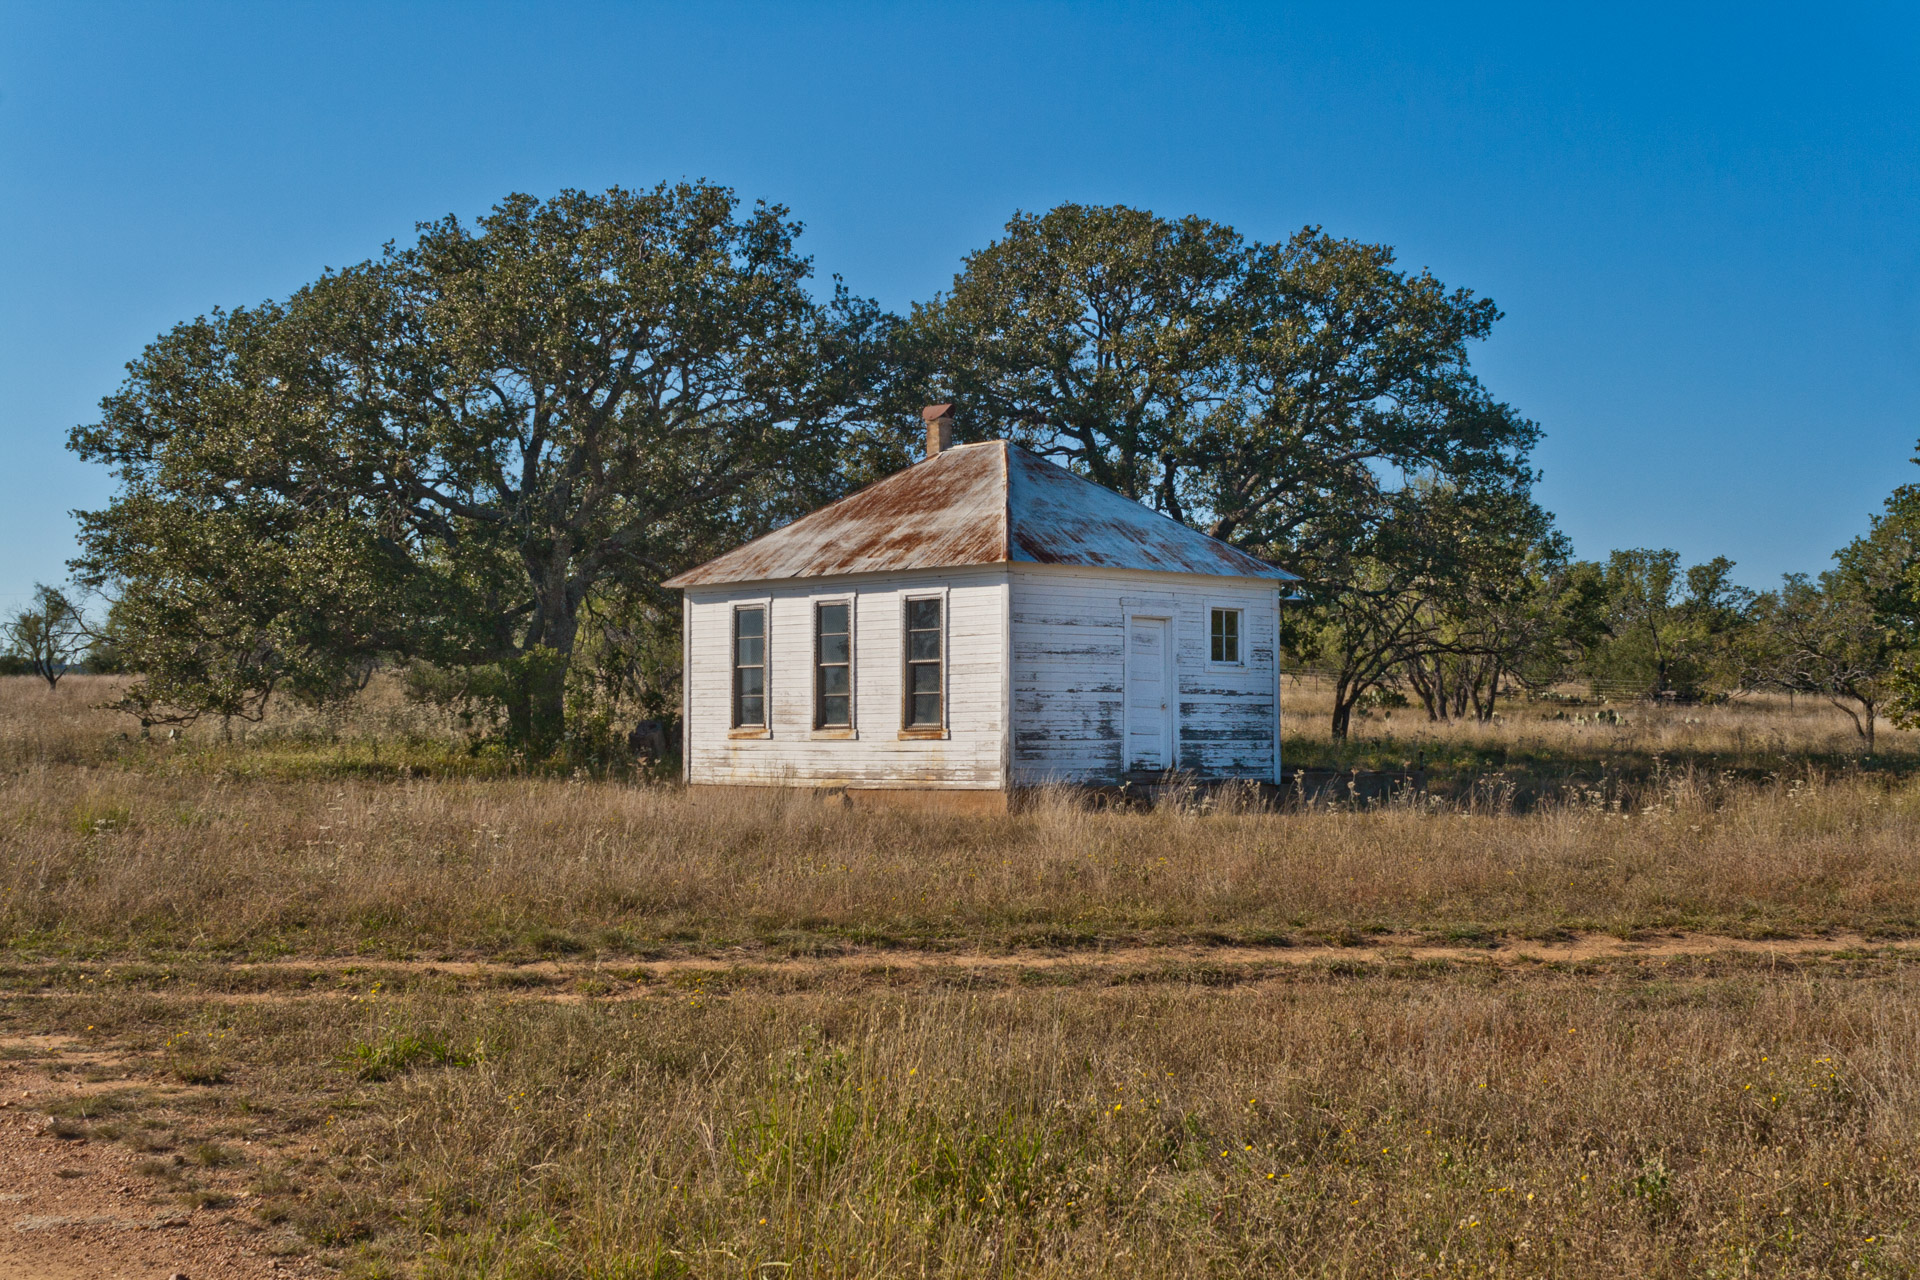 Fly Gap, Texas - The One-Room Schoolhouse